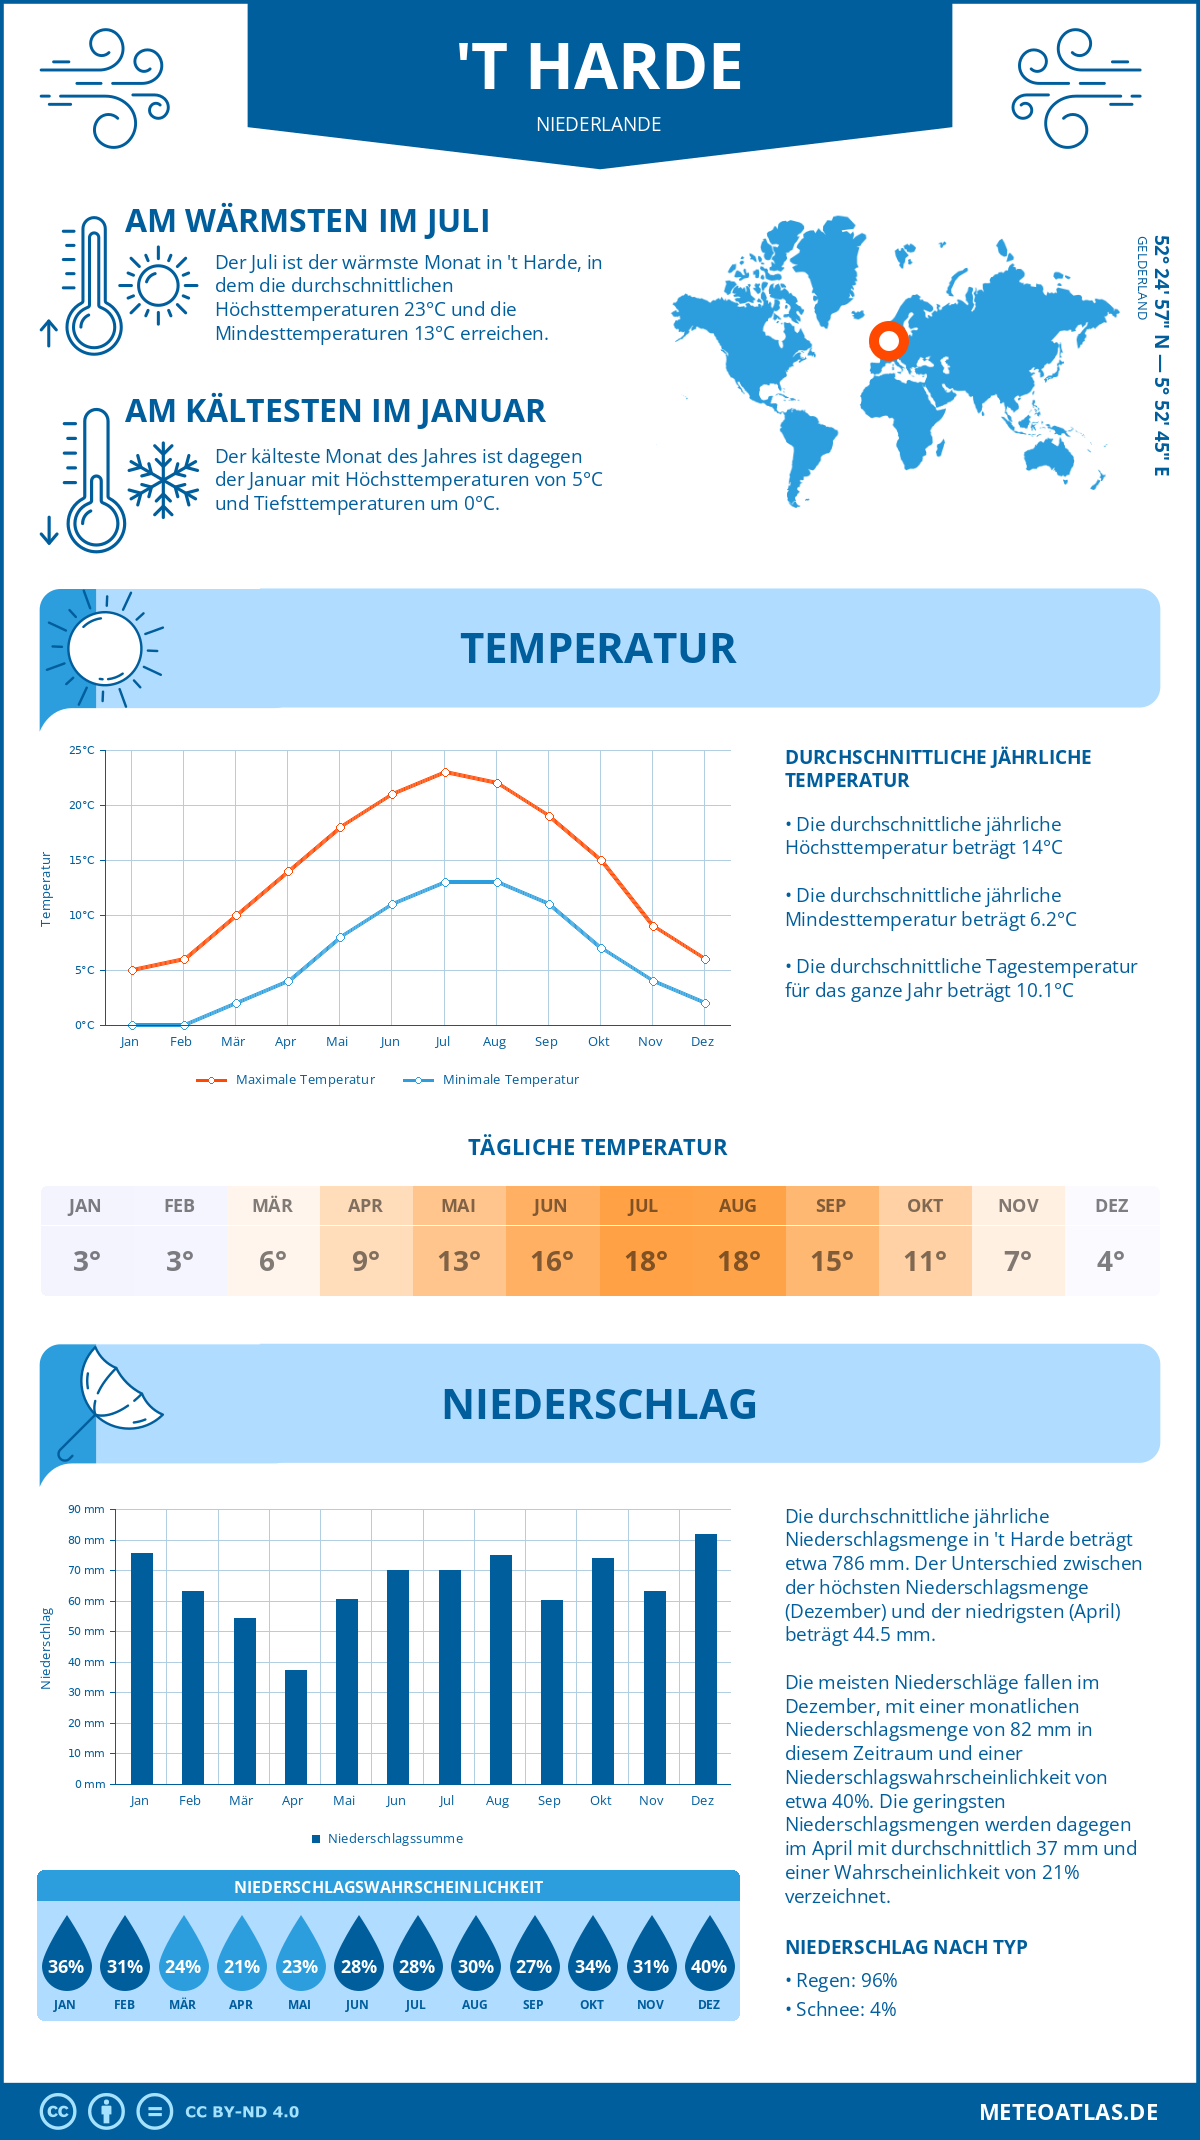 Wetter 't Harde (Niederlande) - Temperatur und Niederschlag